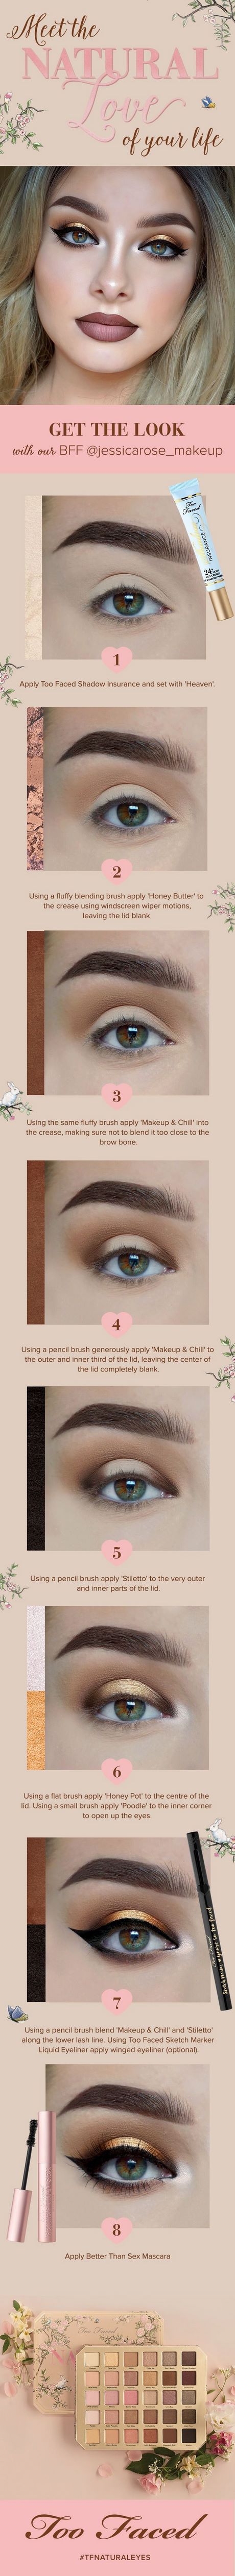 makeup-tutorial-too-faced-natural-42_3 Make-up tutorial ook geconfronteerd natuurlijke